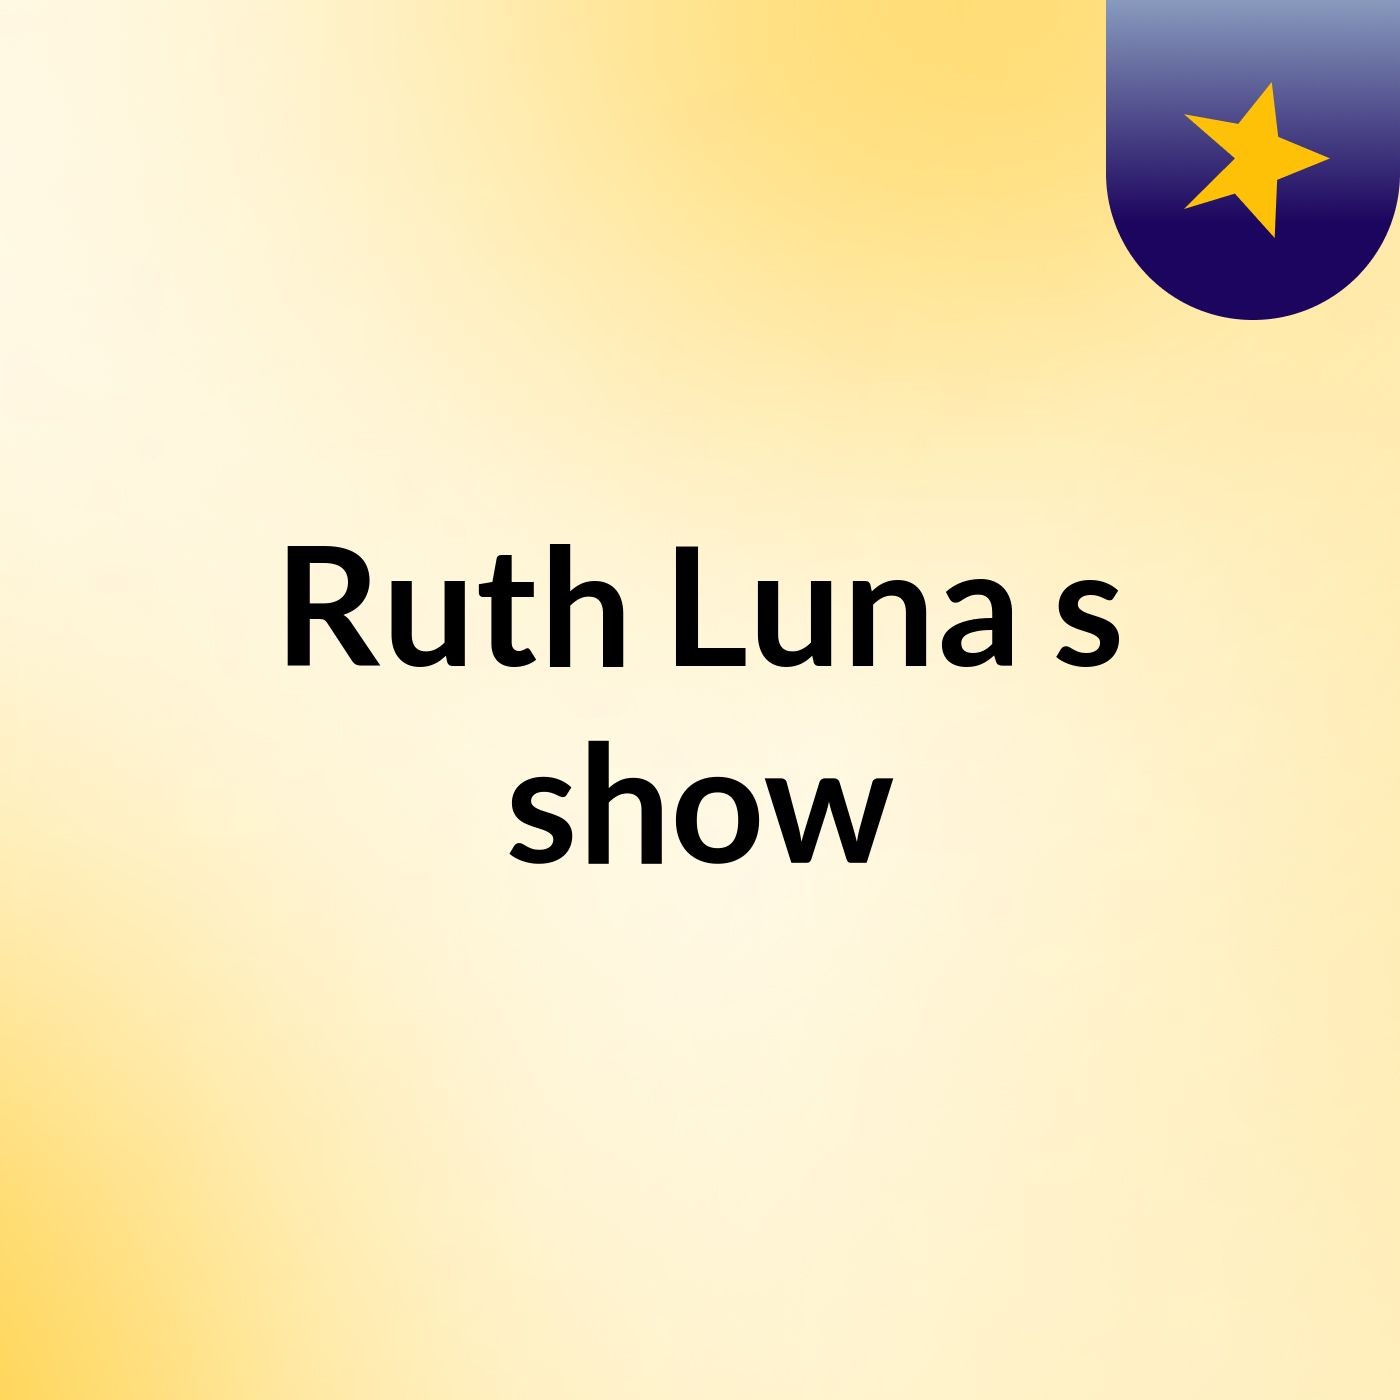 Ruth Luna's show